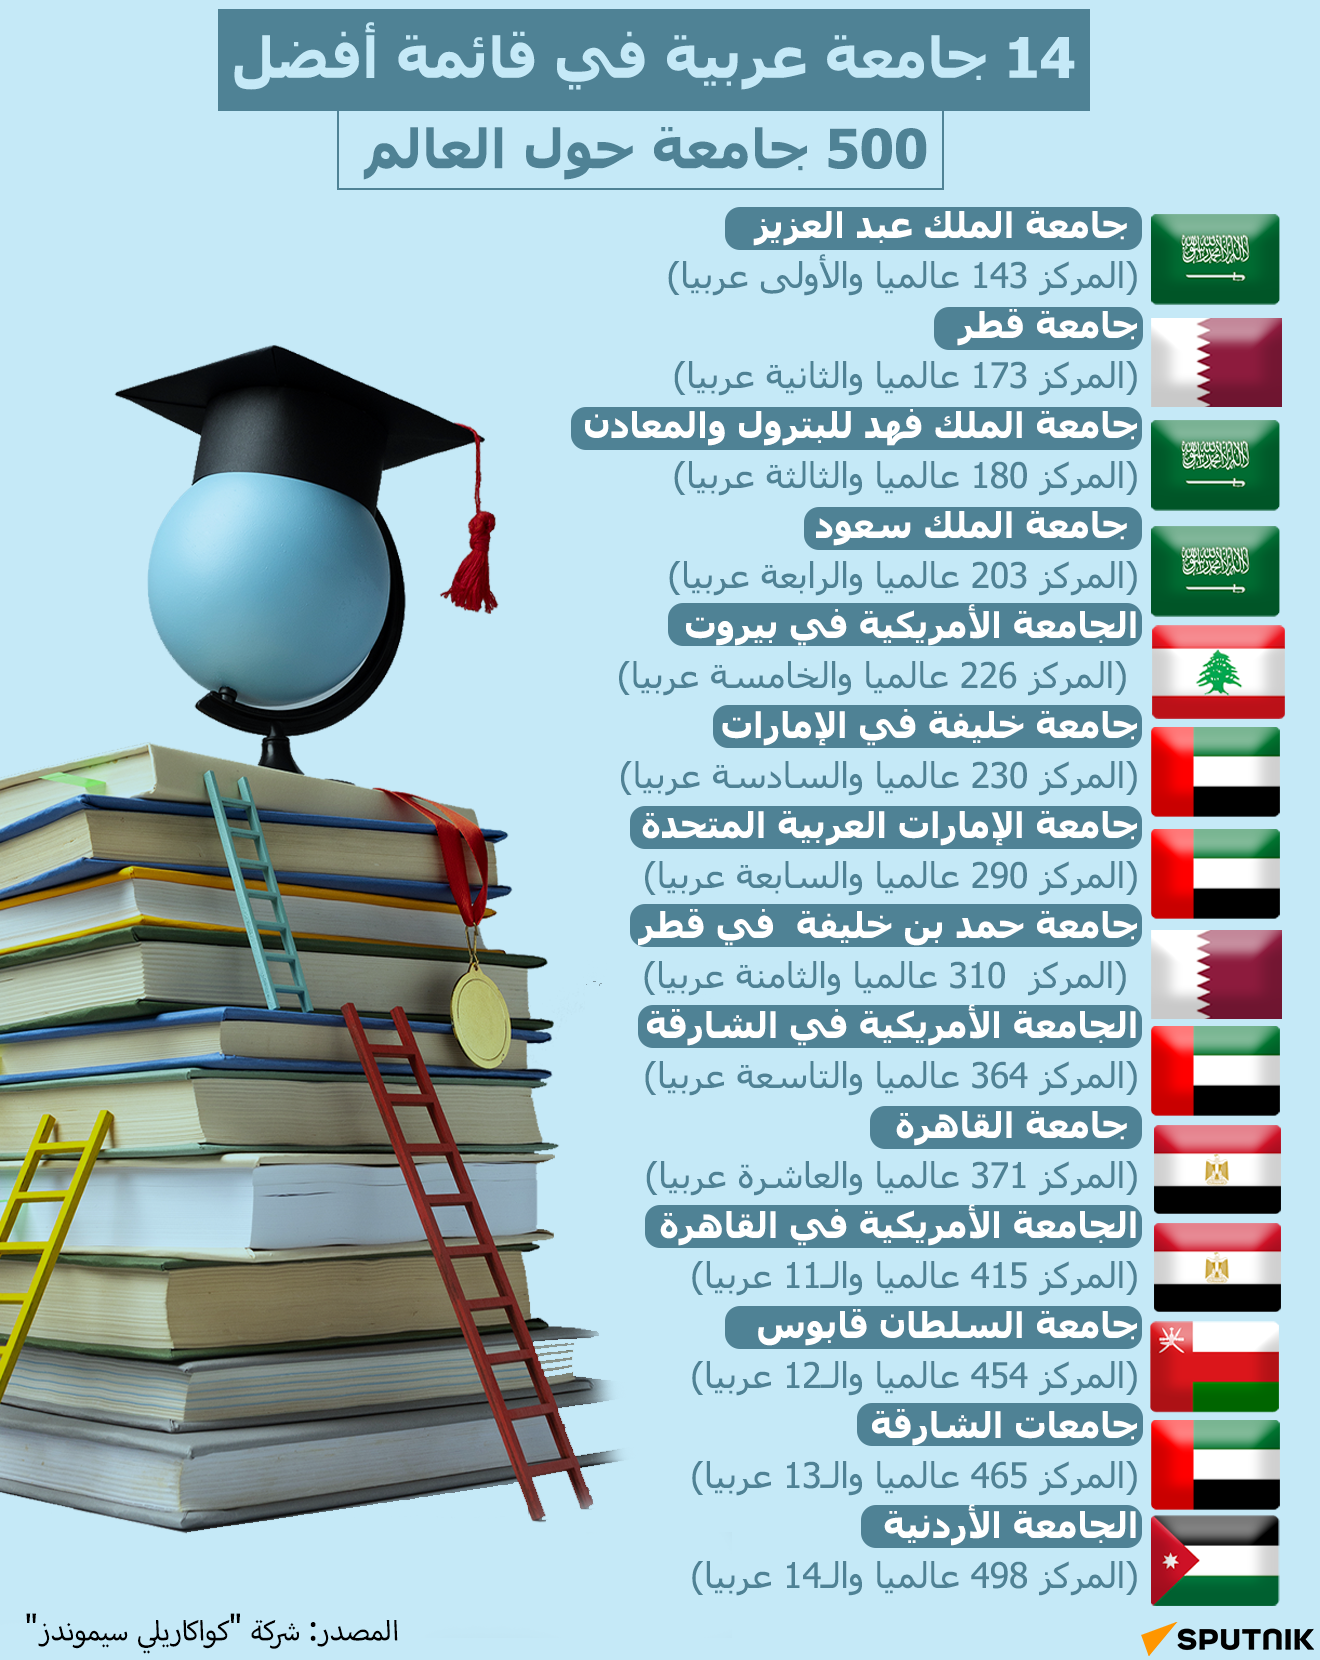 14 جامعة عربية بقائمة أفضل 500 جامعة في العالم - سبوتنيك عربي